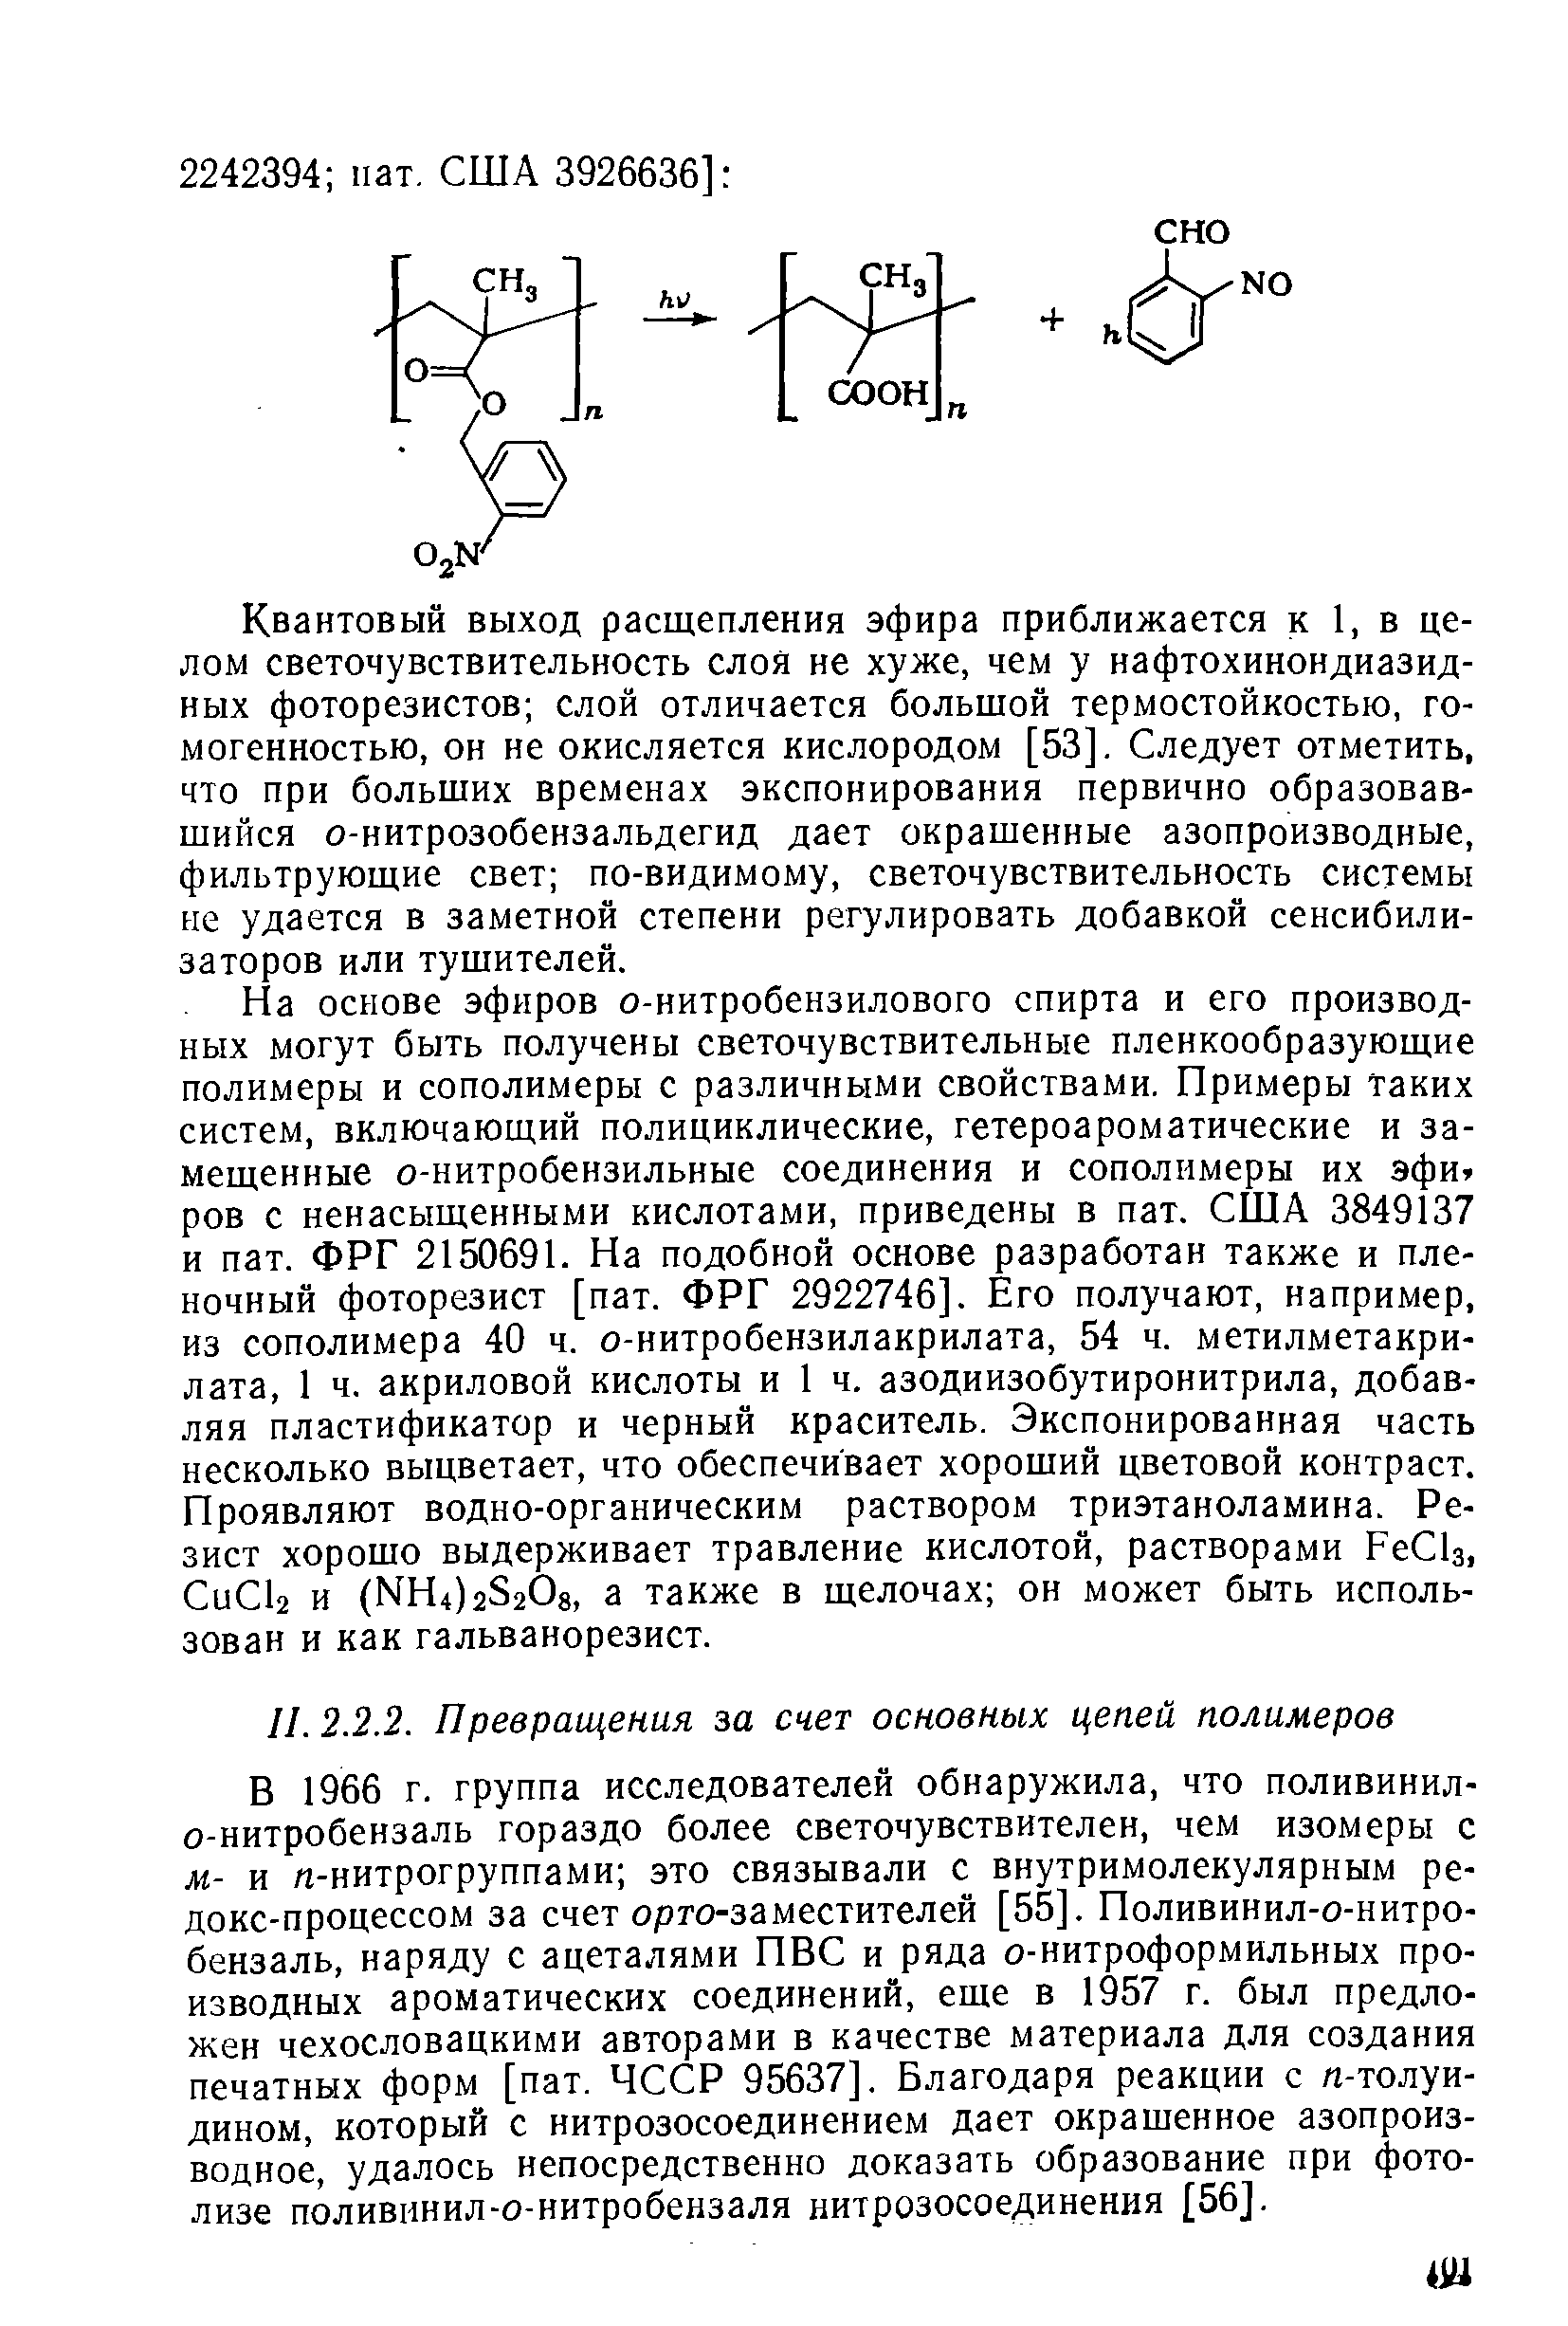 В 1966 г. группа исследователей обнаружила, что поливинил-о-нитробензаль гораздо более светочувствителен, чем изомеры с м.- и /г-нитрогруппами это связывали с внутримолекулярным ре-докс-процессом за счет орго-заместителей [55]. Поливинил-о-нитро-бензаль, наряду с ацеталями ПВС и ряда о-нитроформильных производных ароматических соединений, еше в 1957 г. был предложен чехословацкими авторами в качестве материала для создания печатных форм [пат. ЧССР 95637]. Благодаря реакции с /г-толуи-дином, который с нитрозосоединением дает окрашенное азопроизводное, удалось непосредственно доказать образование при фотолизе поливинил-о-нитробензаля нитрозосоединения [56].